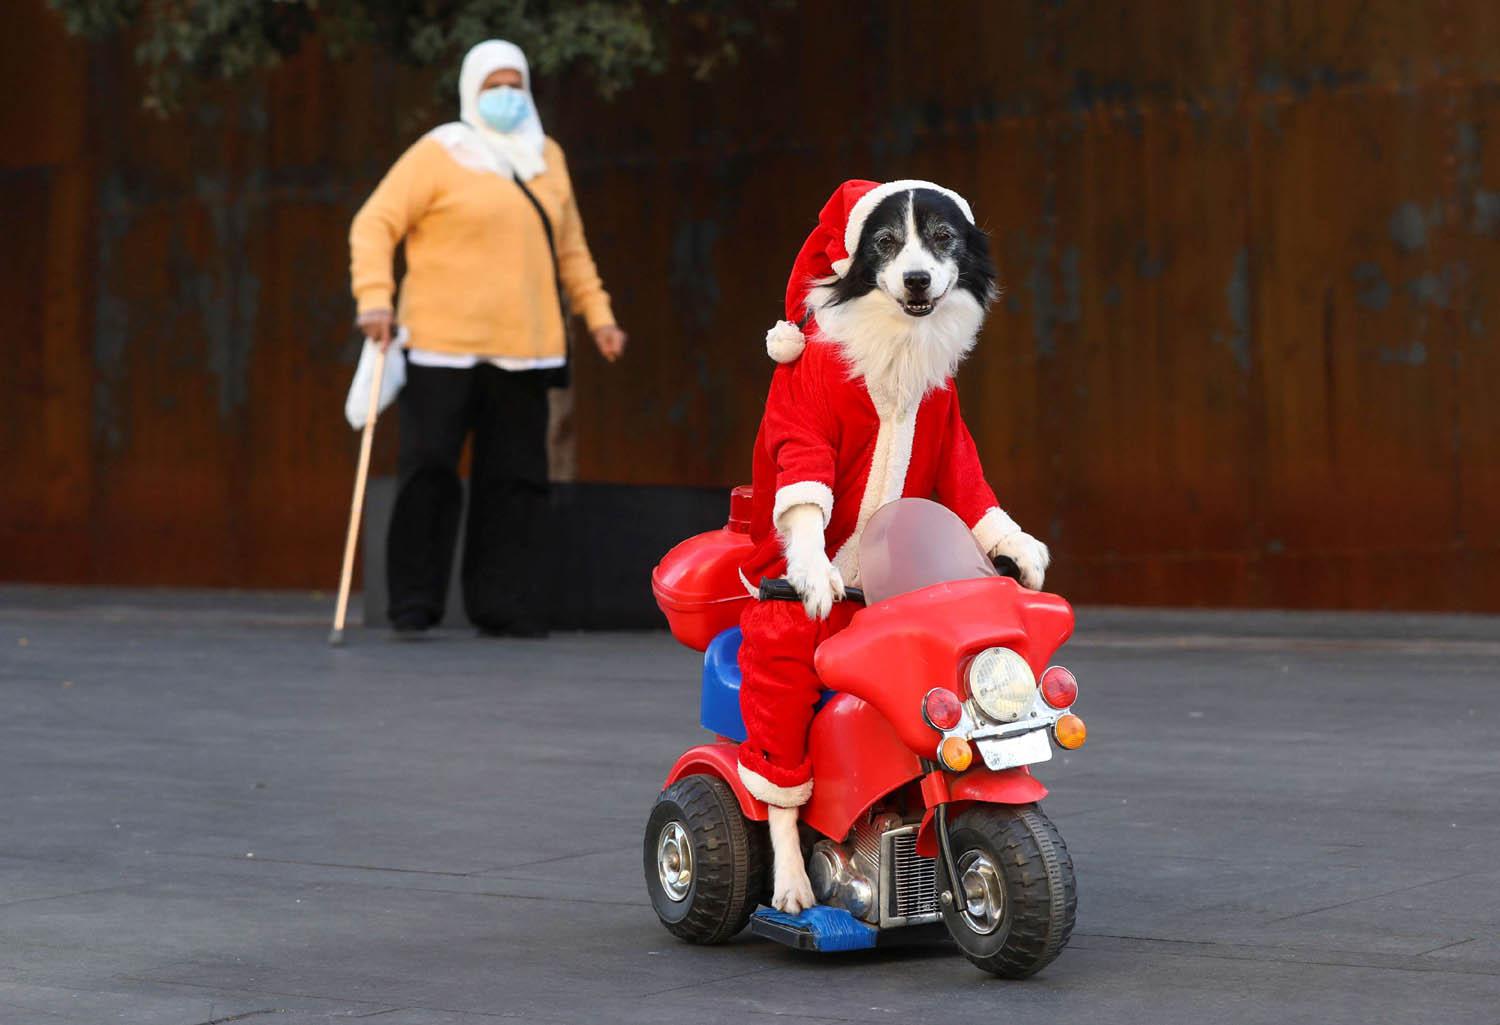 كلب للاستعراض يرتدي ملابس بابا نويل في بيروت